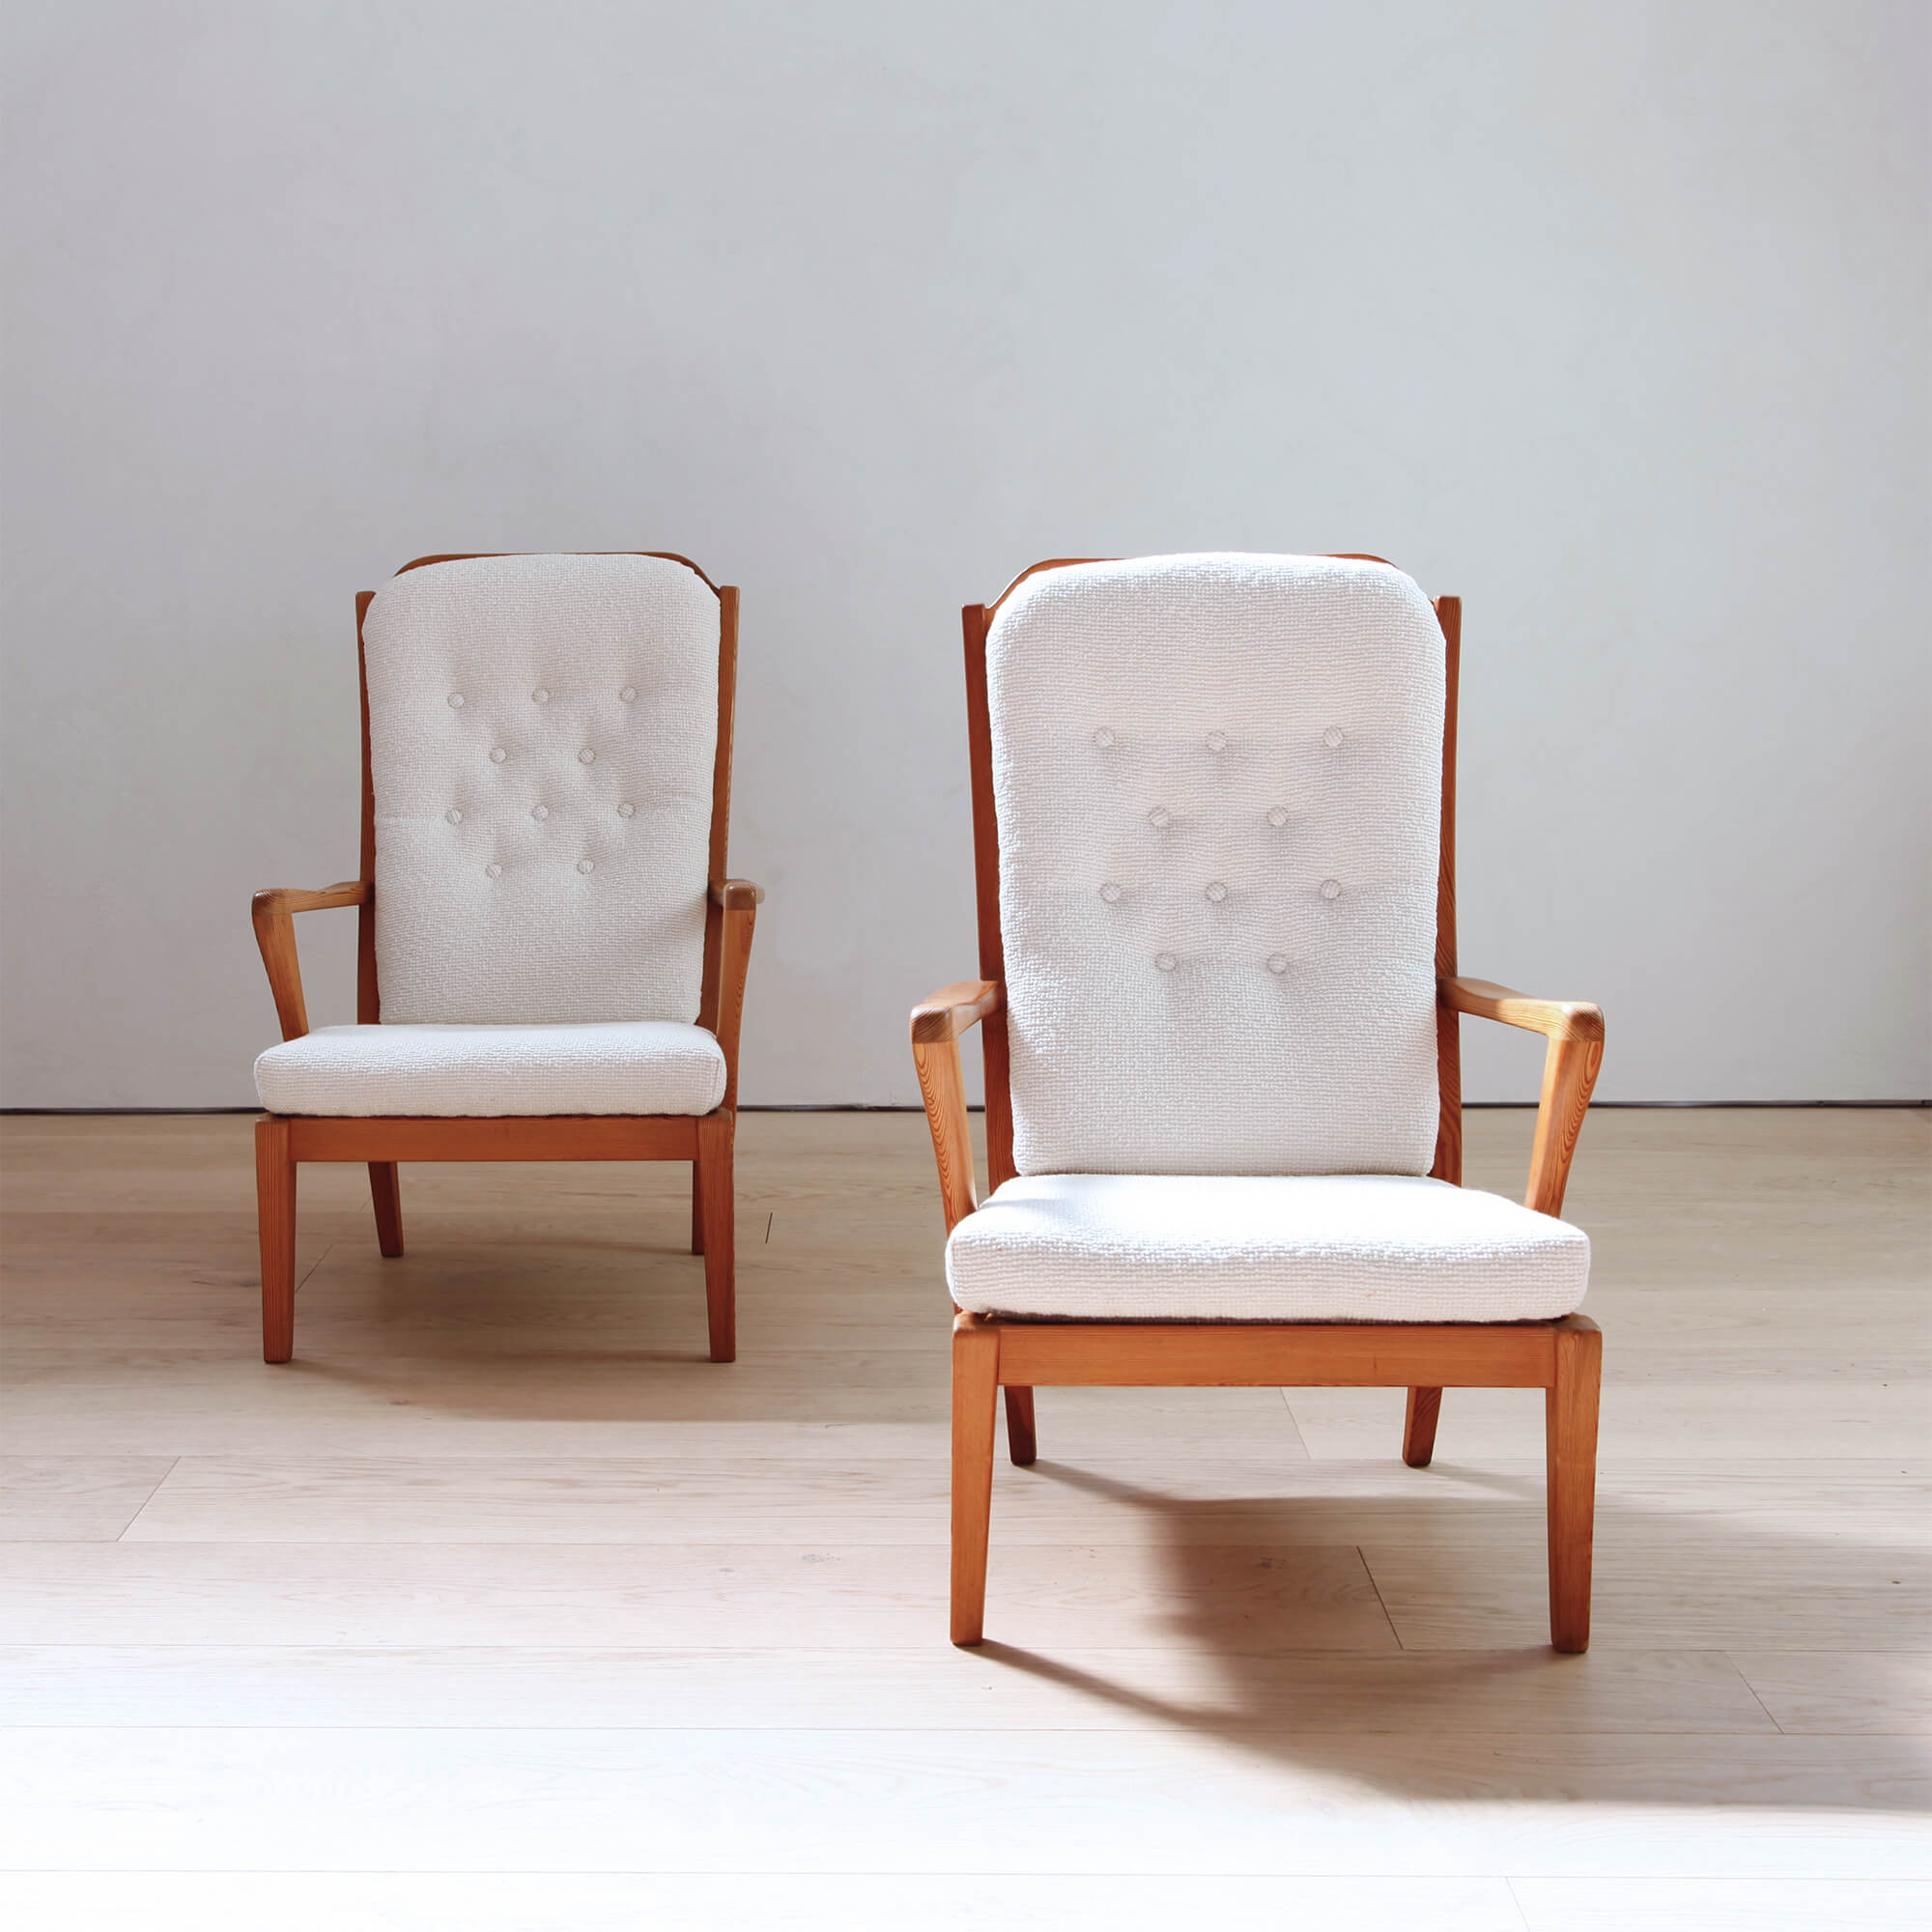 Rare Pair of "Mabulator" Chairs by Carl Malmsten